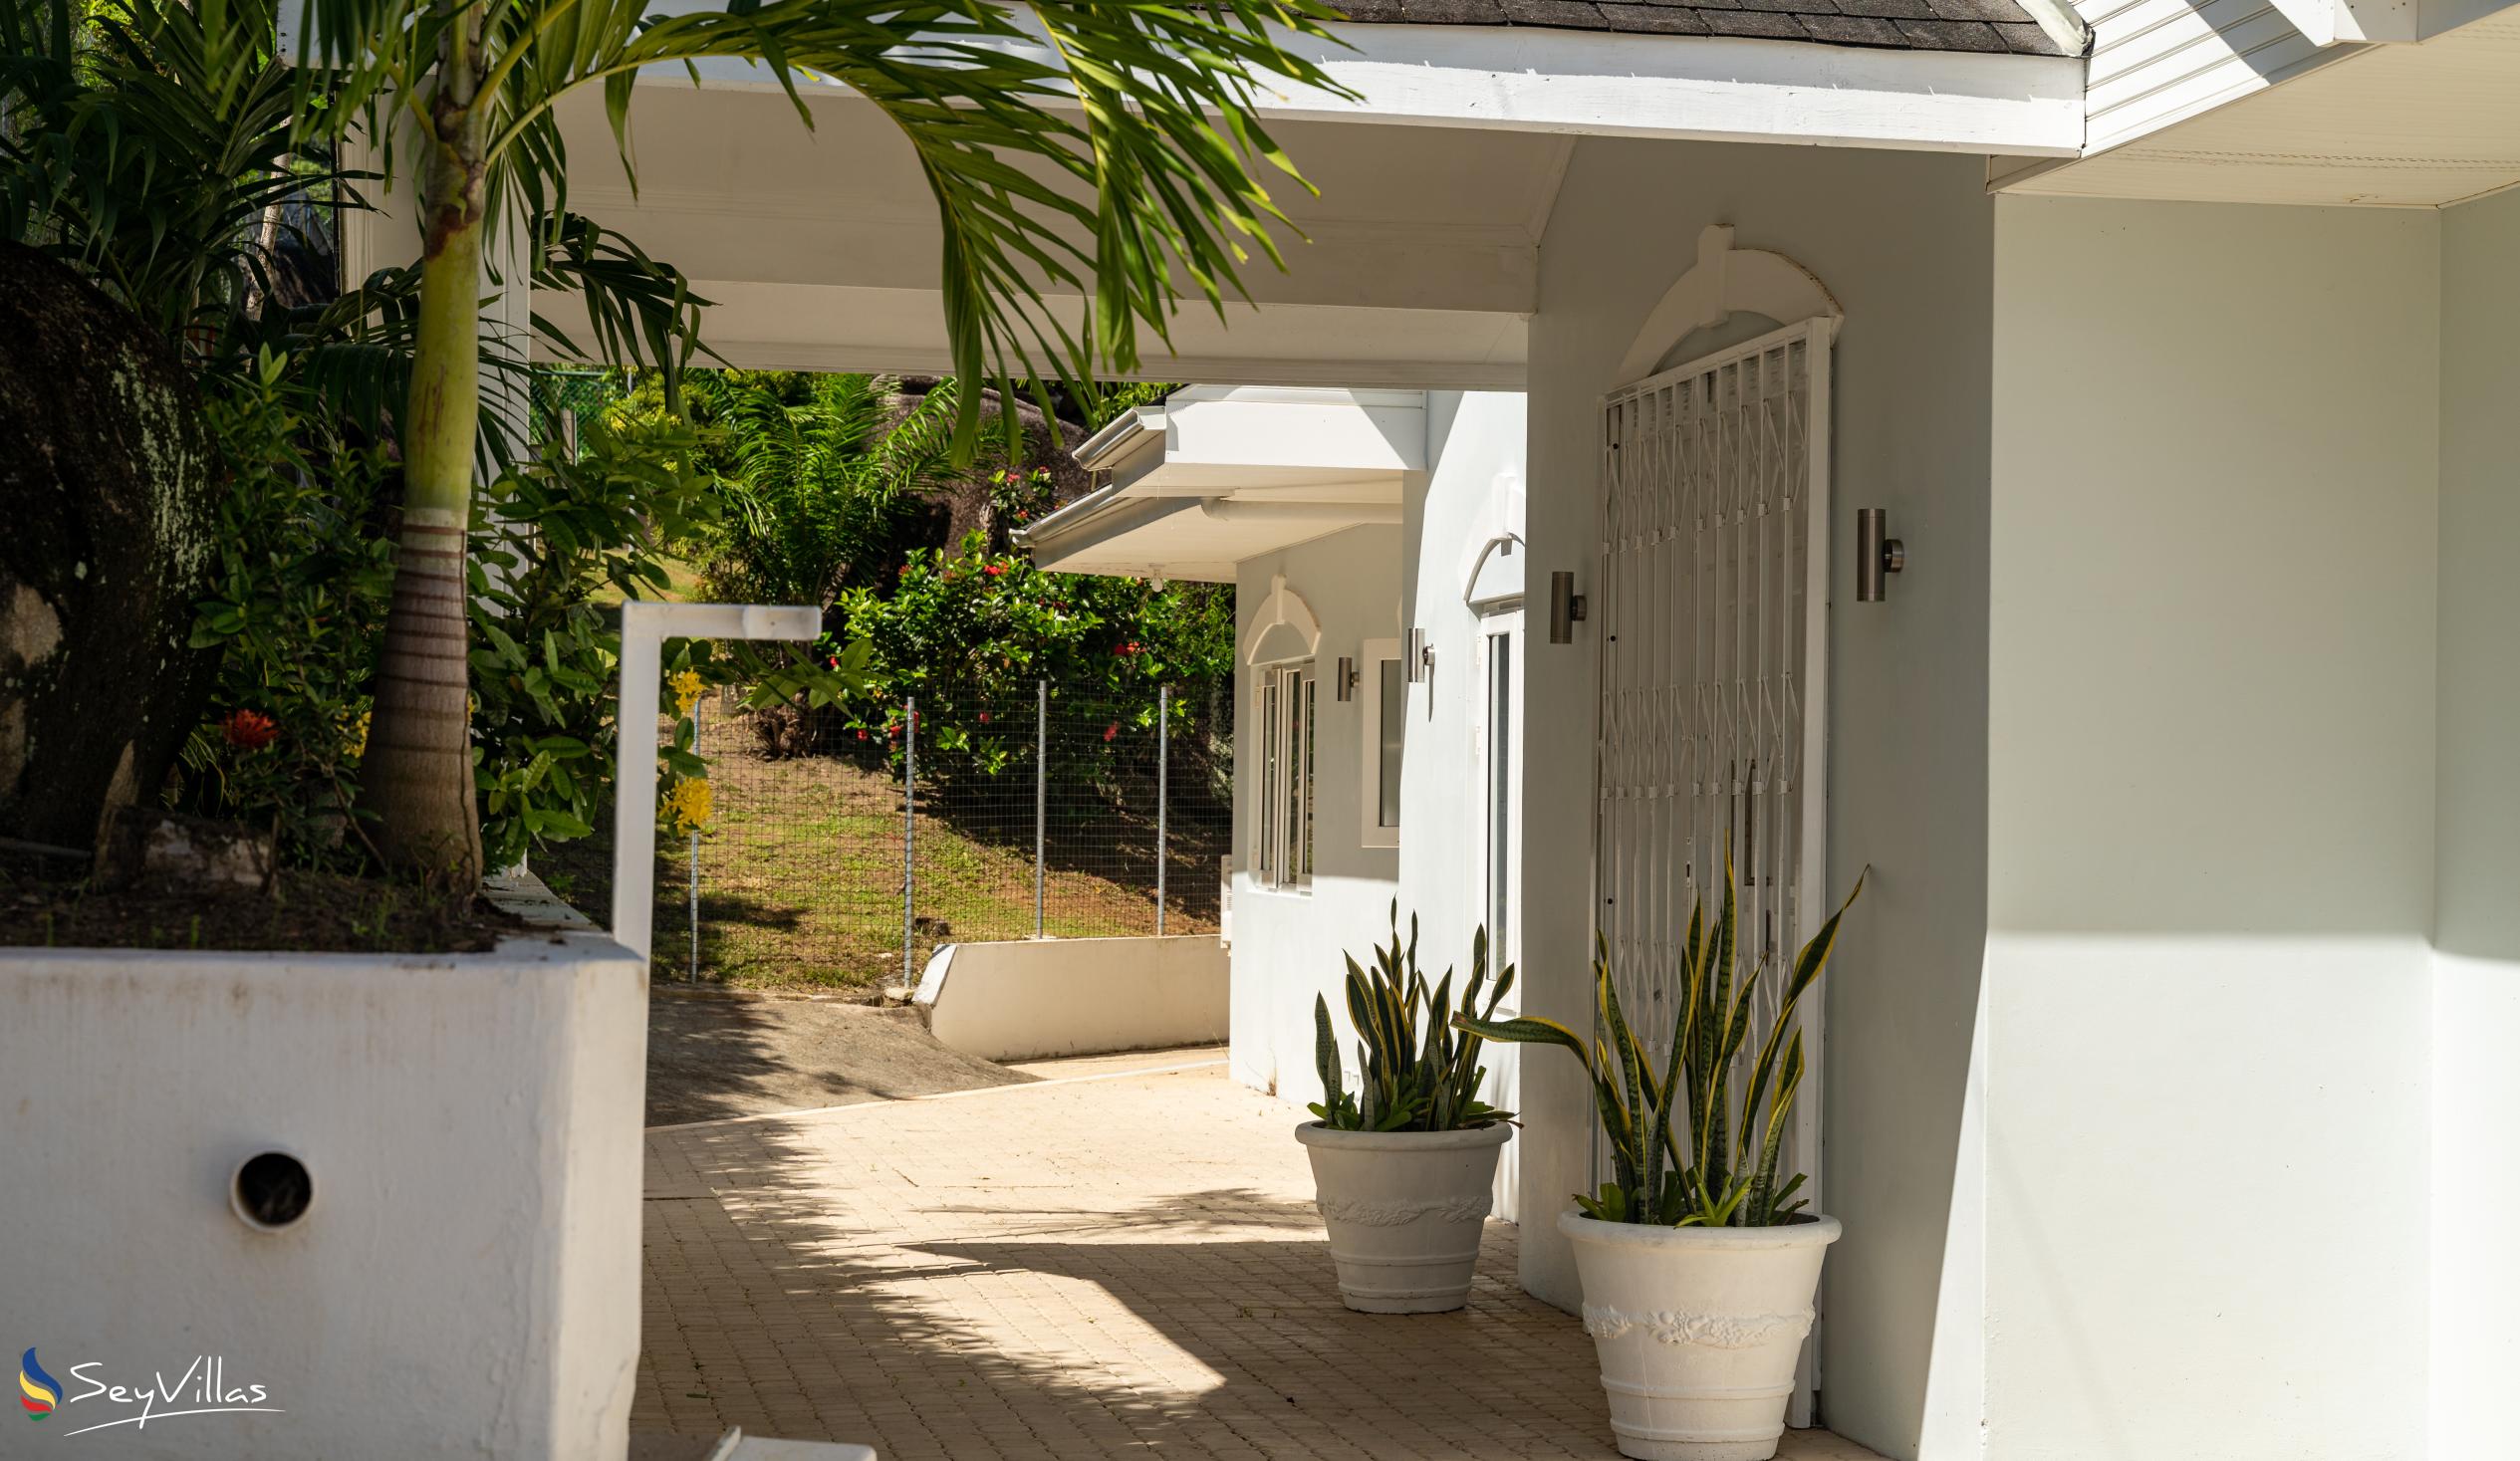 Foto 20: Villa Jasmin - Aussenbereich - Mahé (Seychellen)